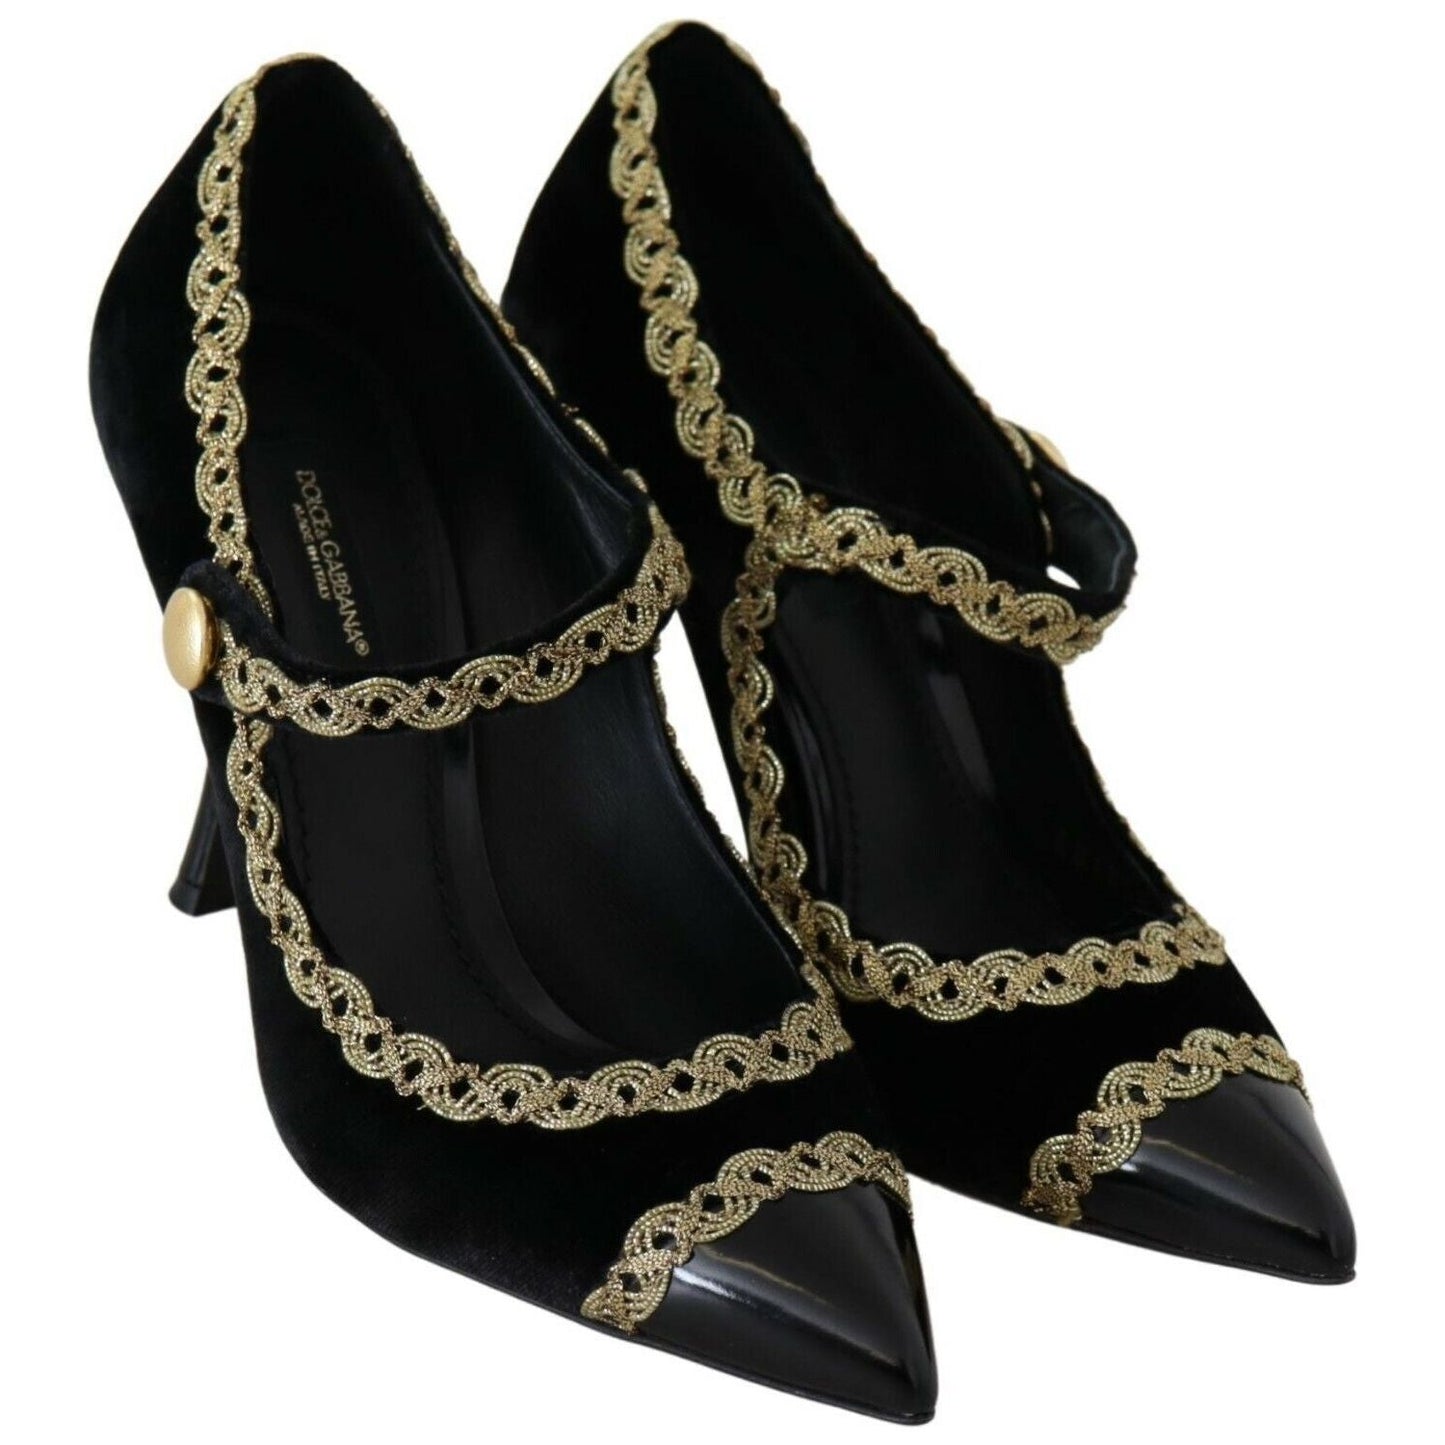 Dolce & Gabbana Elegant Gold-Embroidered Black Velvet Pumps WOMAN PUMPS black-embellished-velvet-mary-jane-pumps-shoes